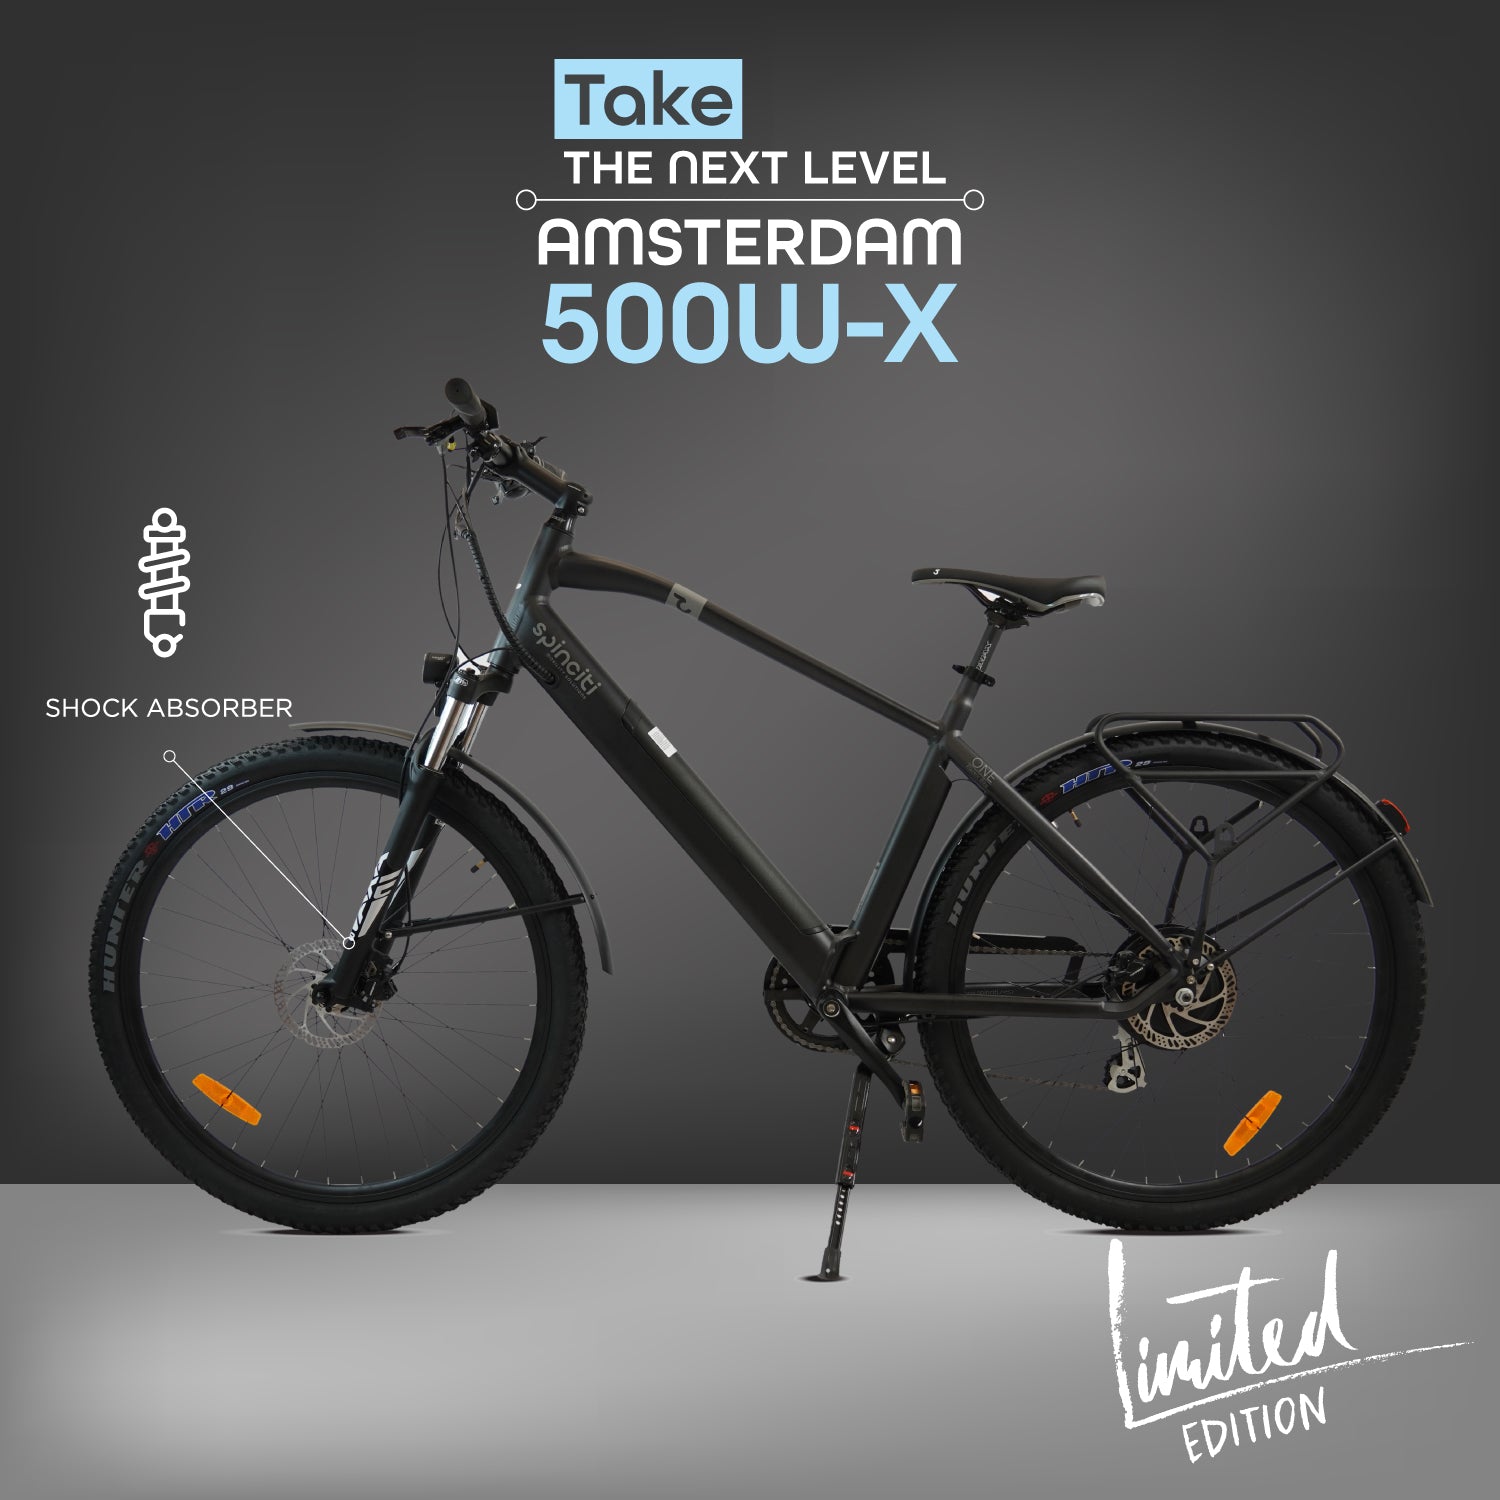 Bicicleta Eléctrica Spinciti Amsterdam 500W-X con suspensión - Edición Limitada